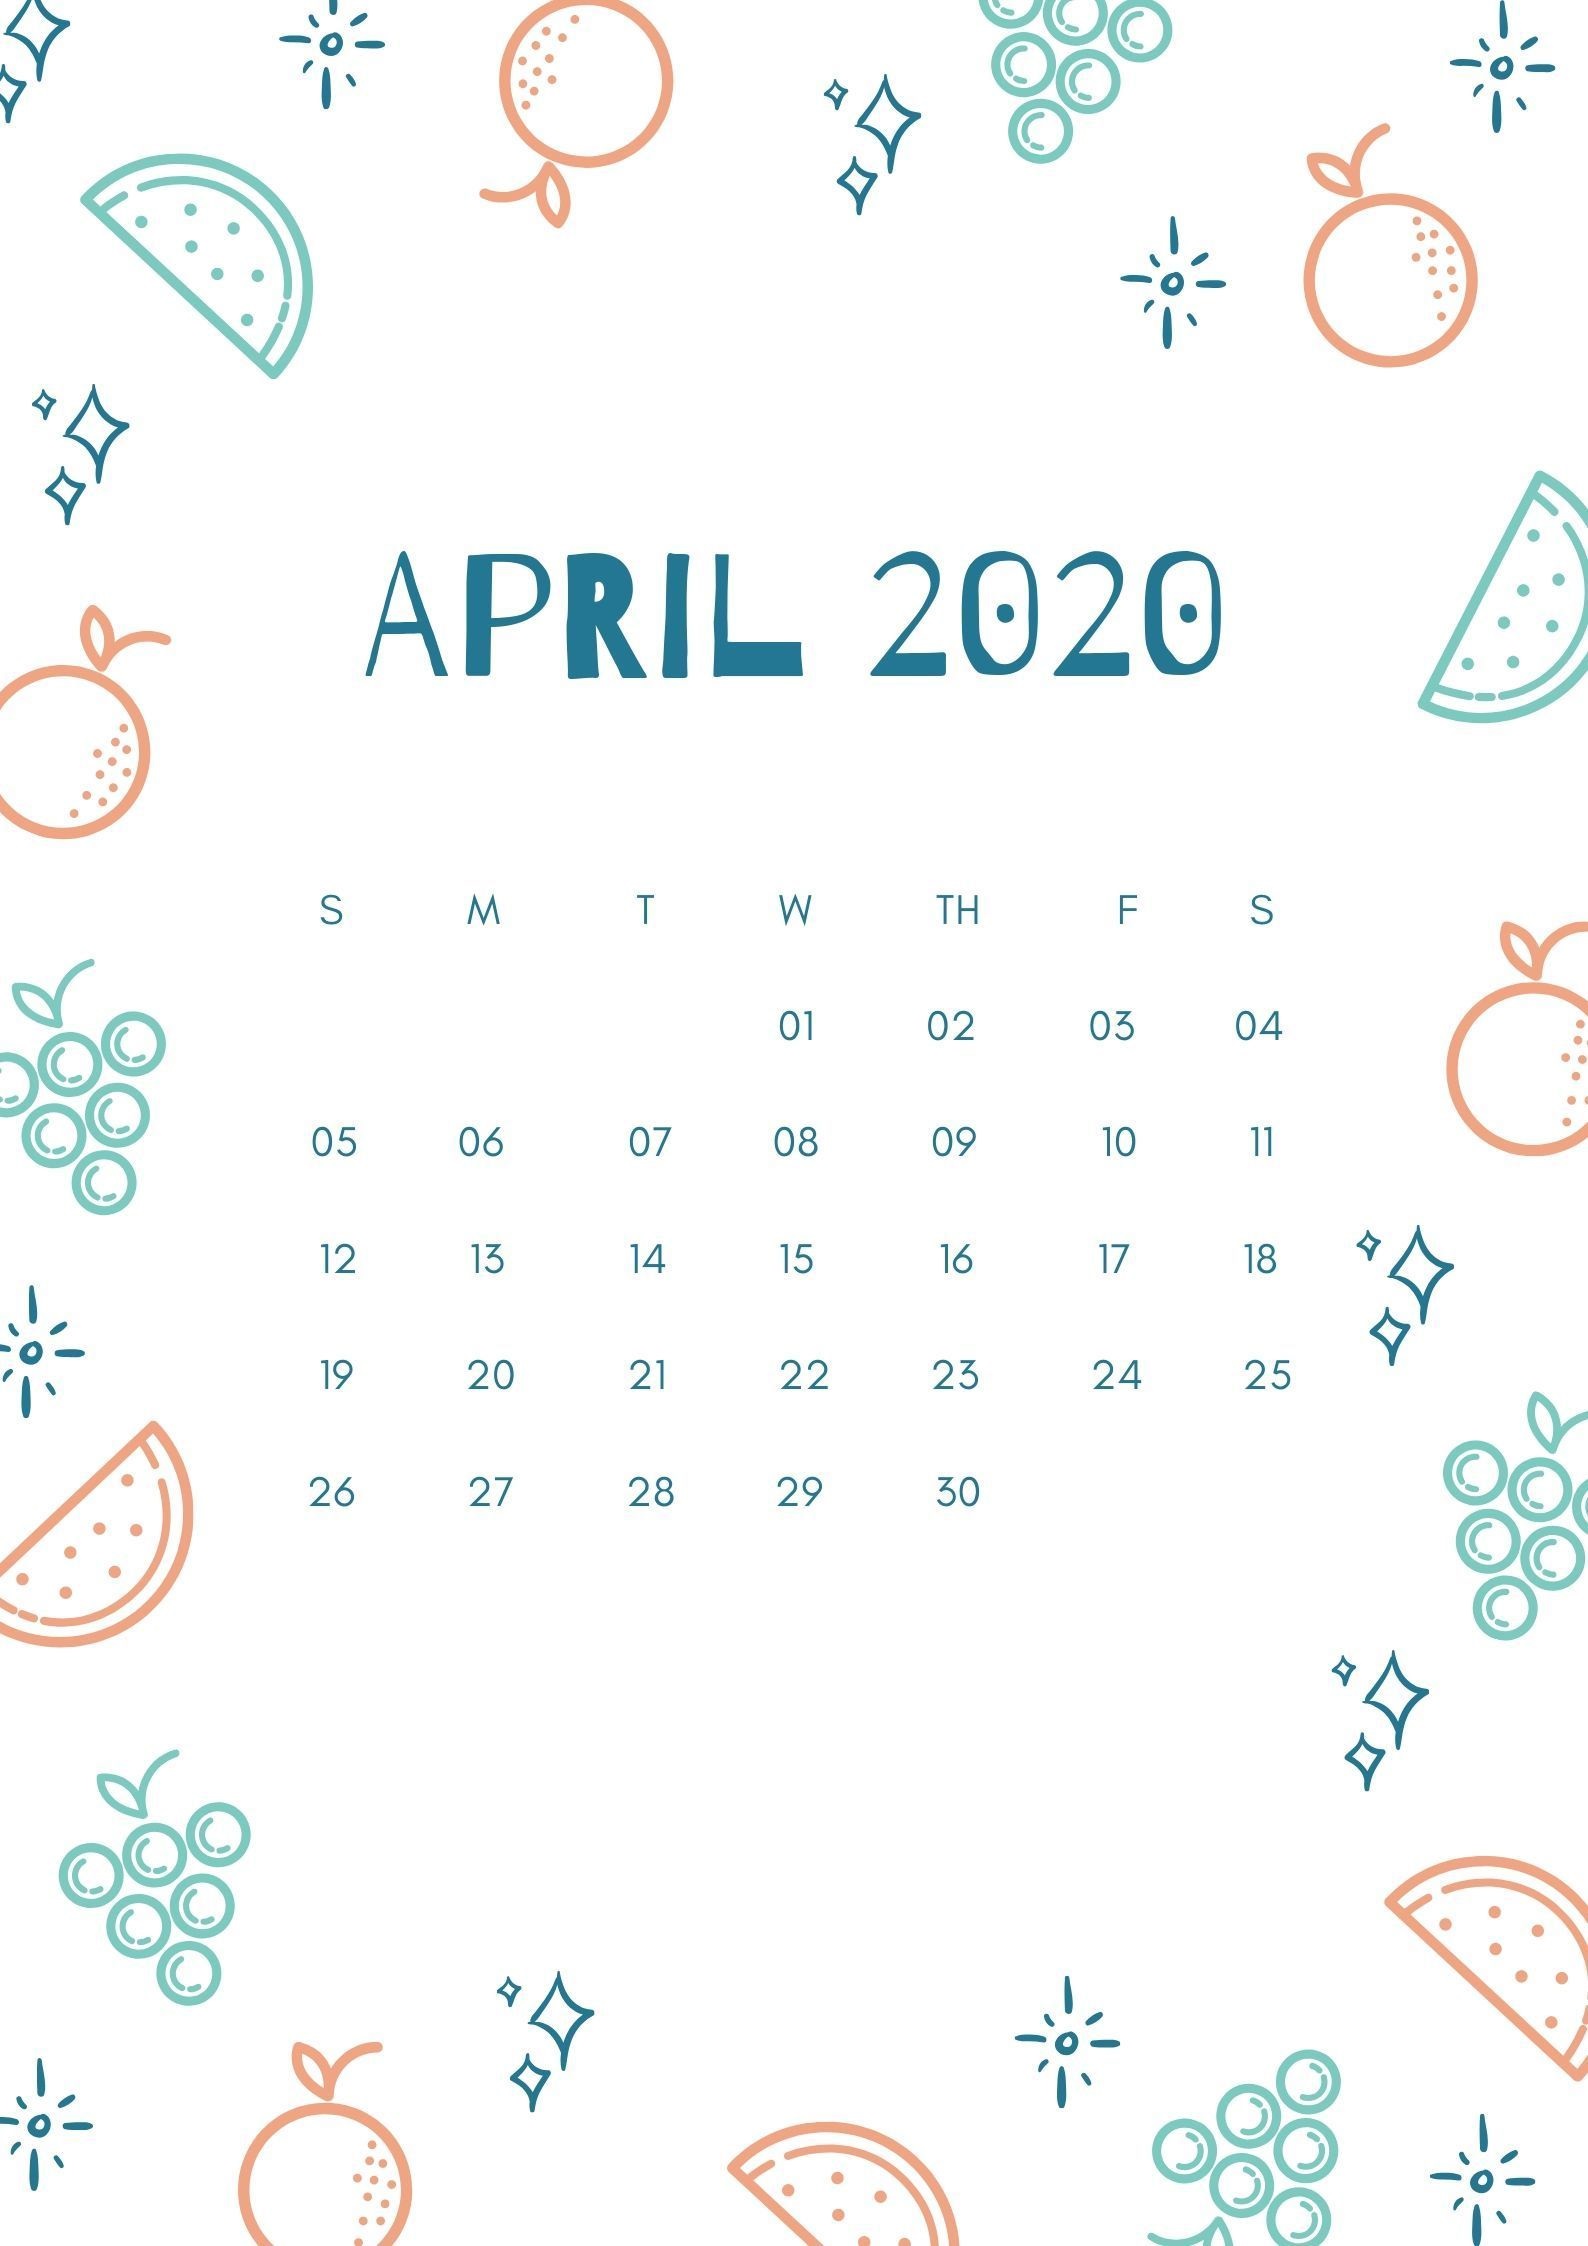 April 2020 Calendar iPhone Wallpaper   Free August 2019 Calendar